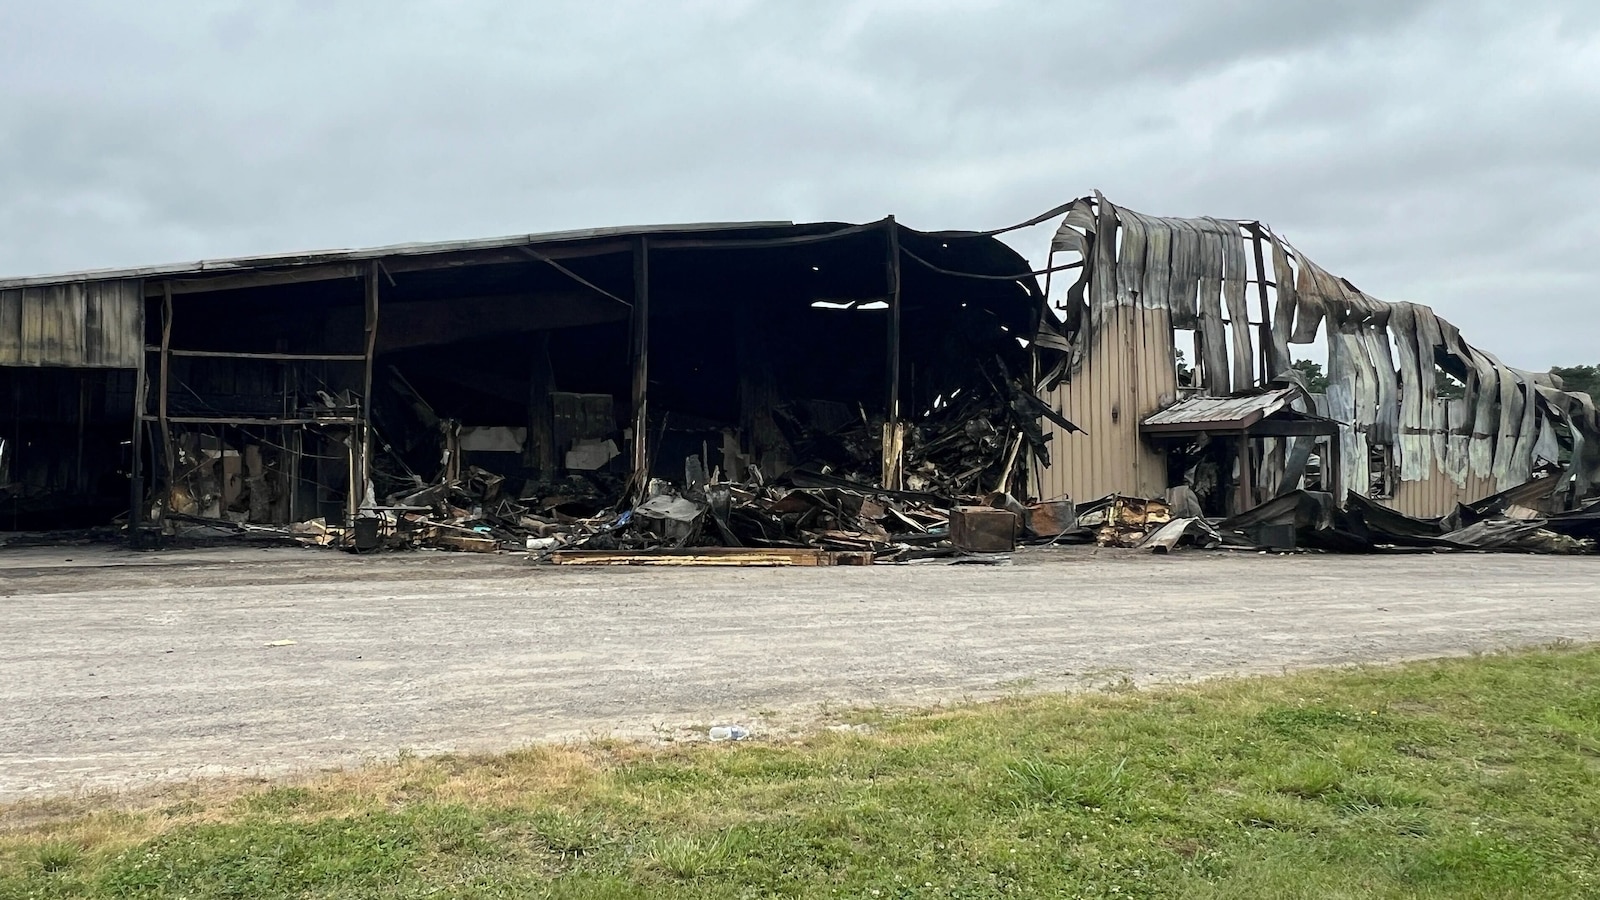 44 horses dead, 1 person injured in massive Ohio barn fire